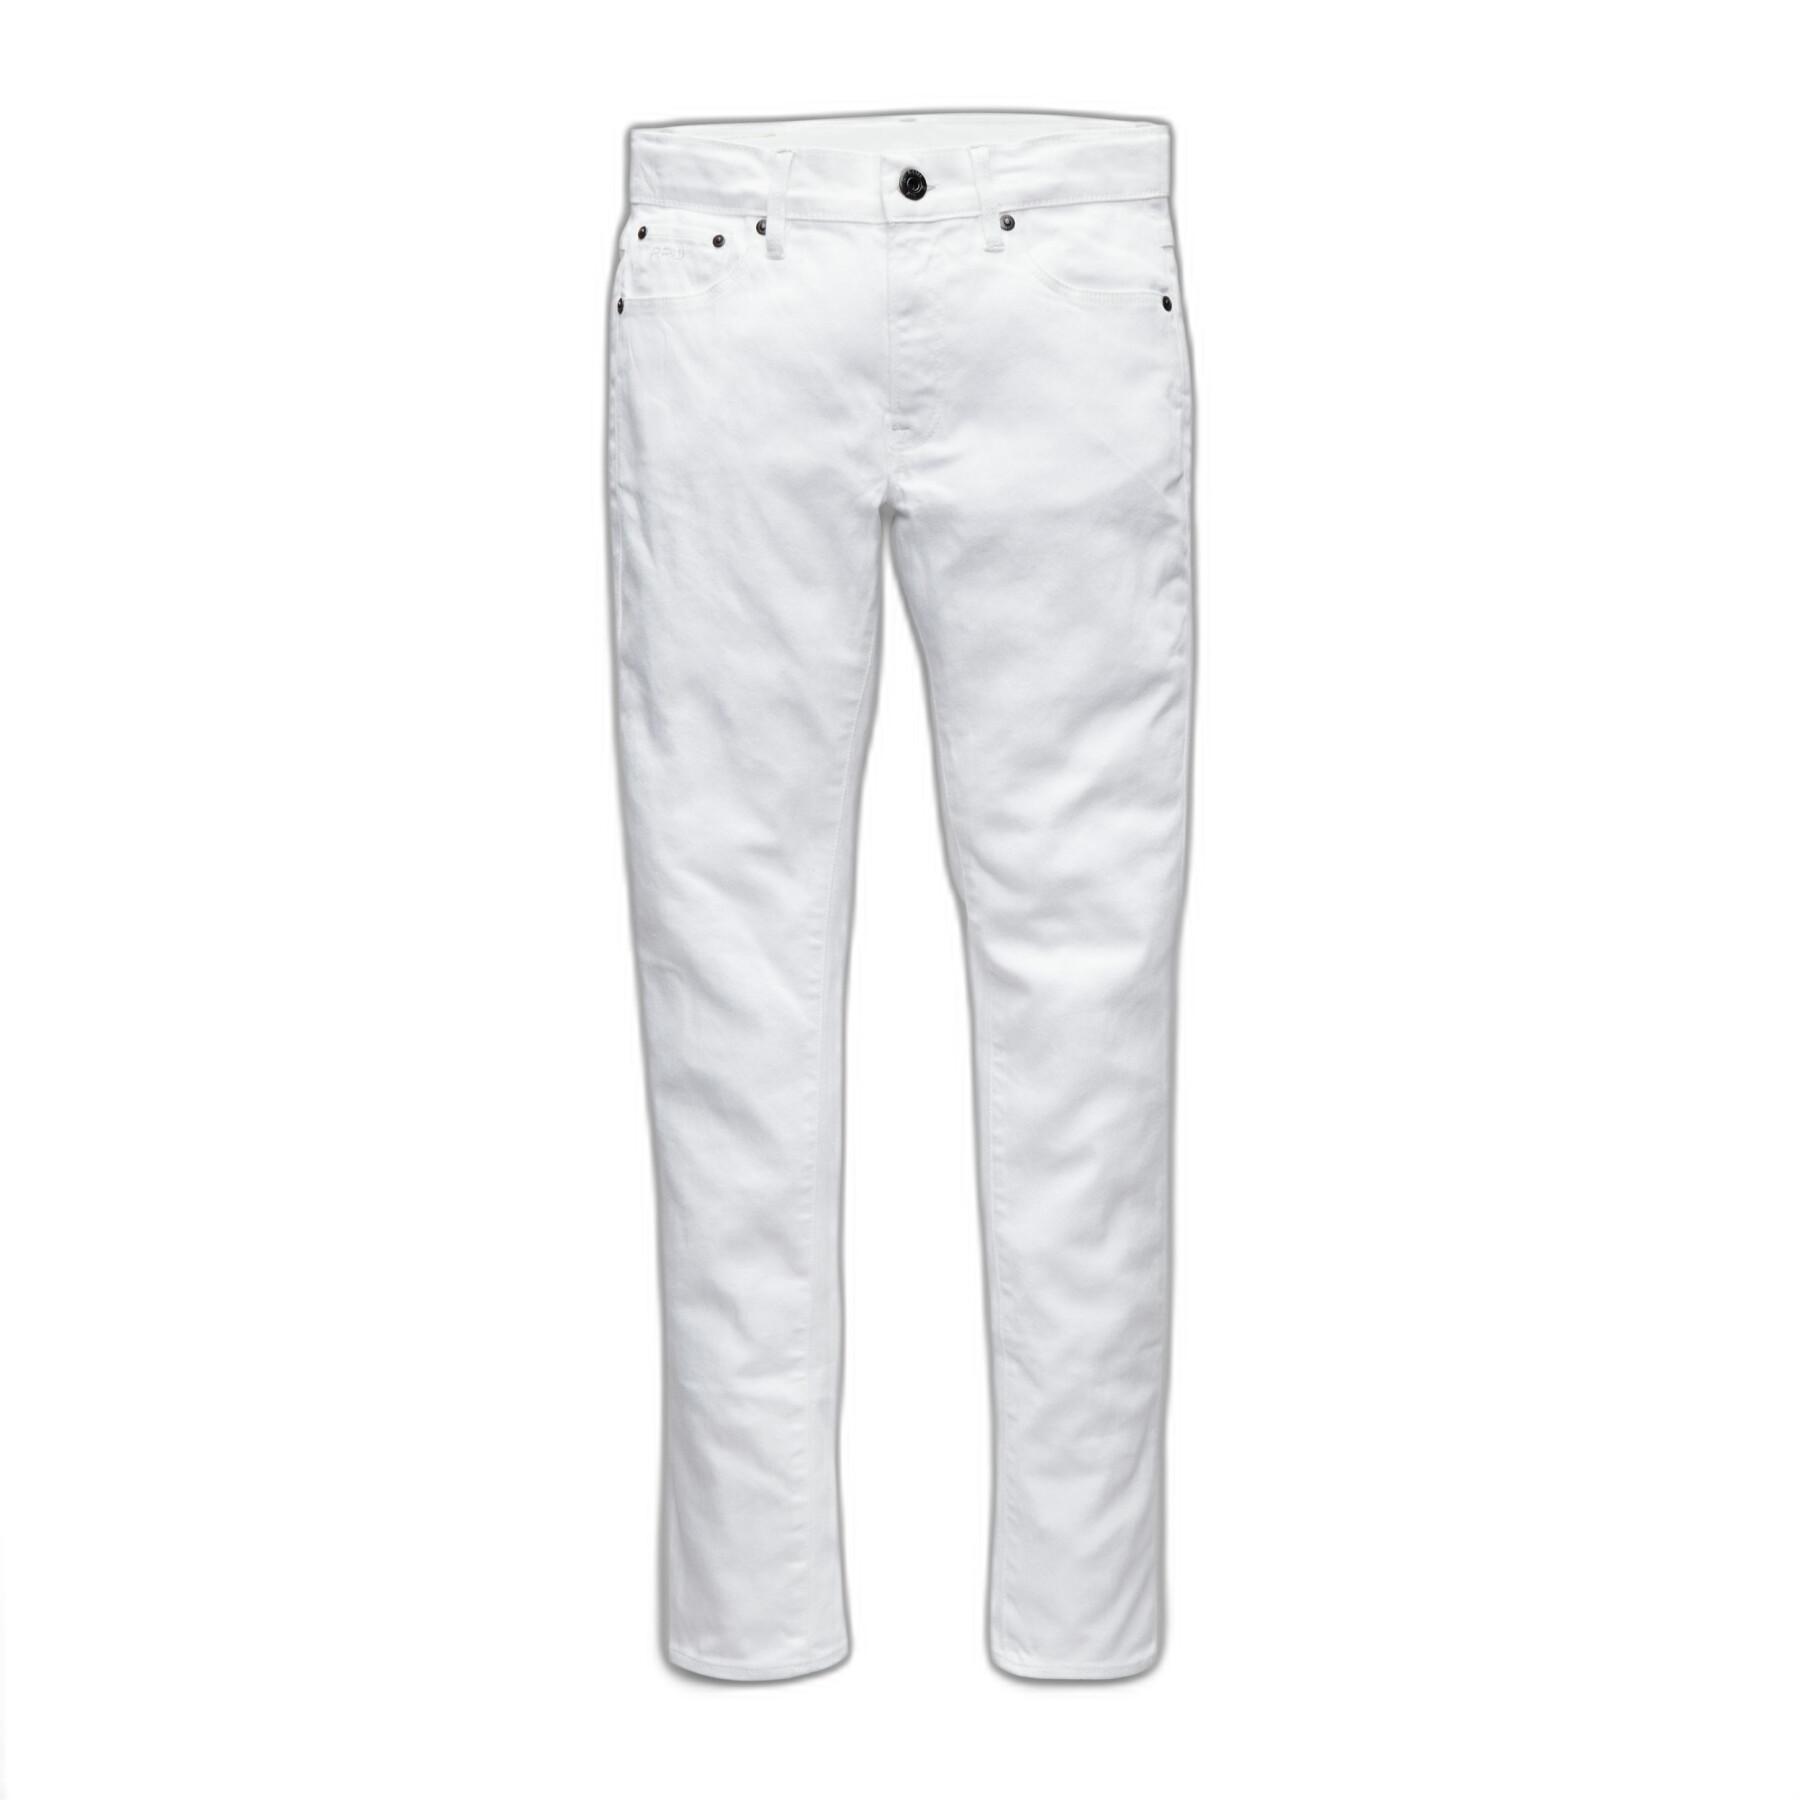 Kinder skinny jeans G-Star Ss22157 D-staq